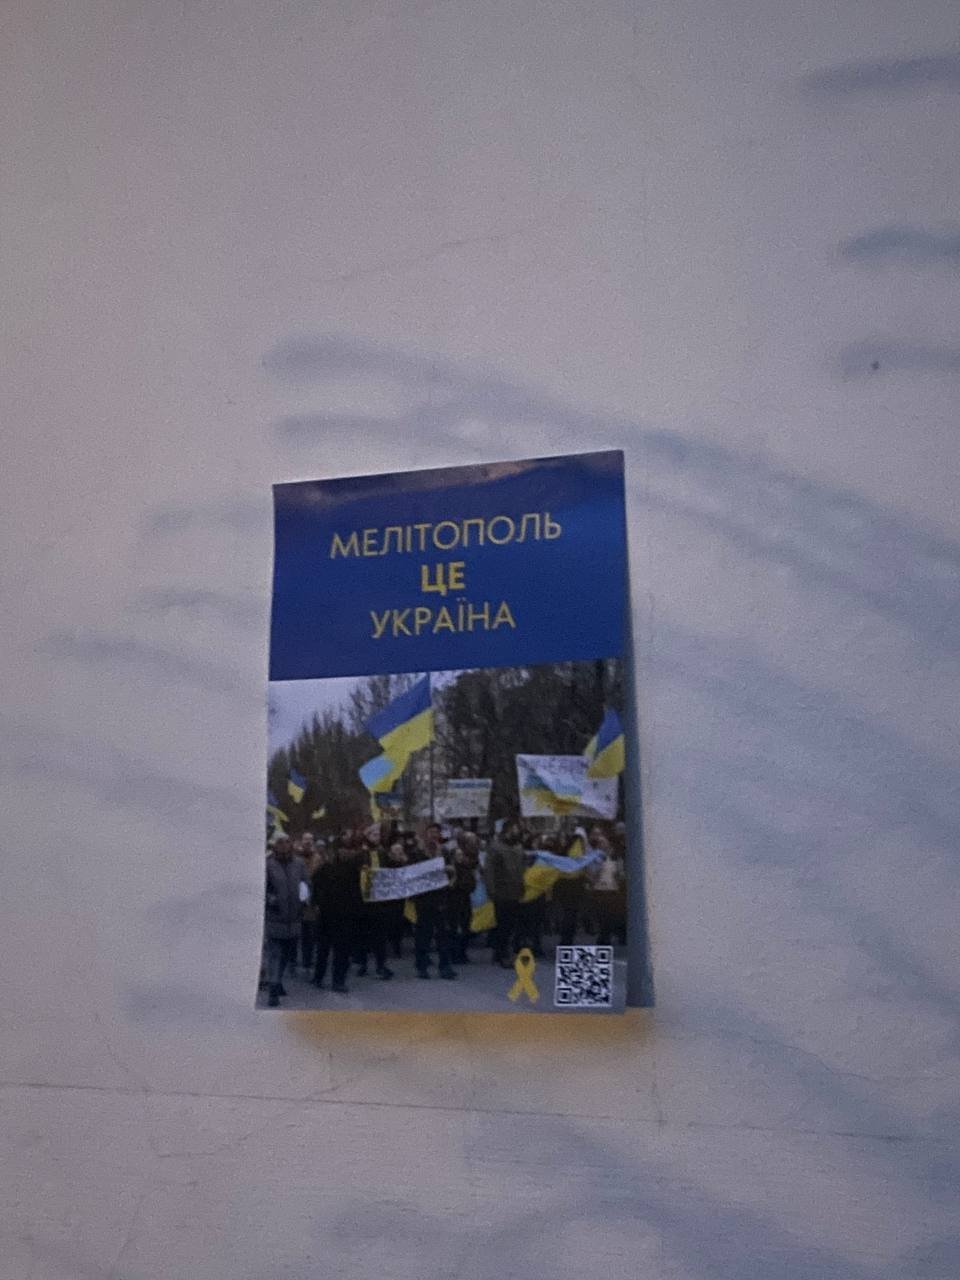 Активісти руху спротиву у Запорізькій області продовжують ширити українську символіку (Фото)